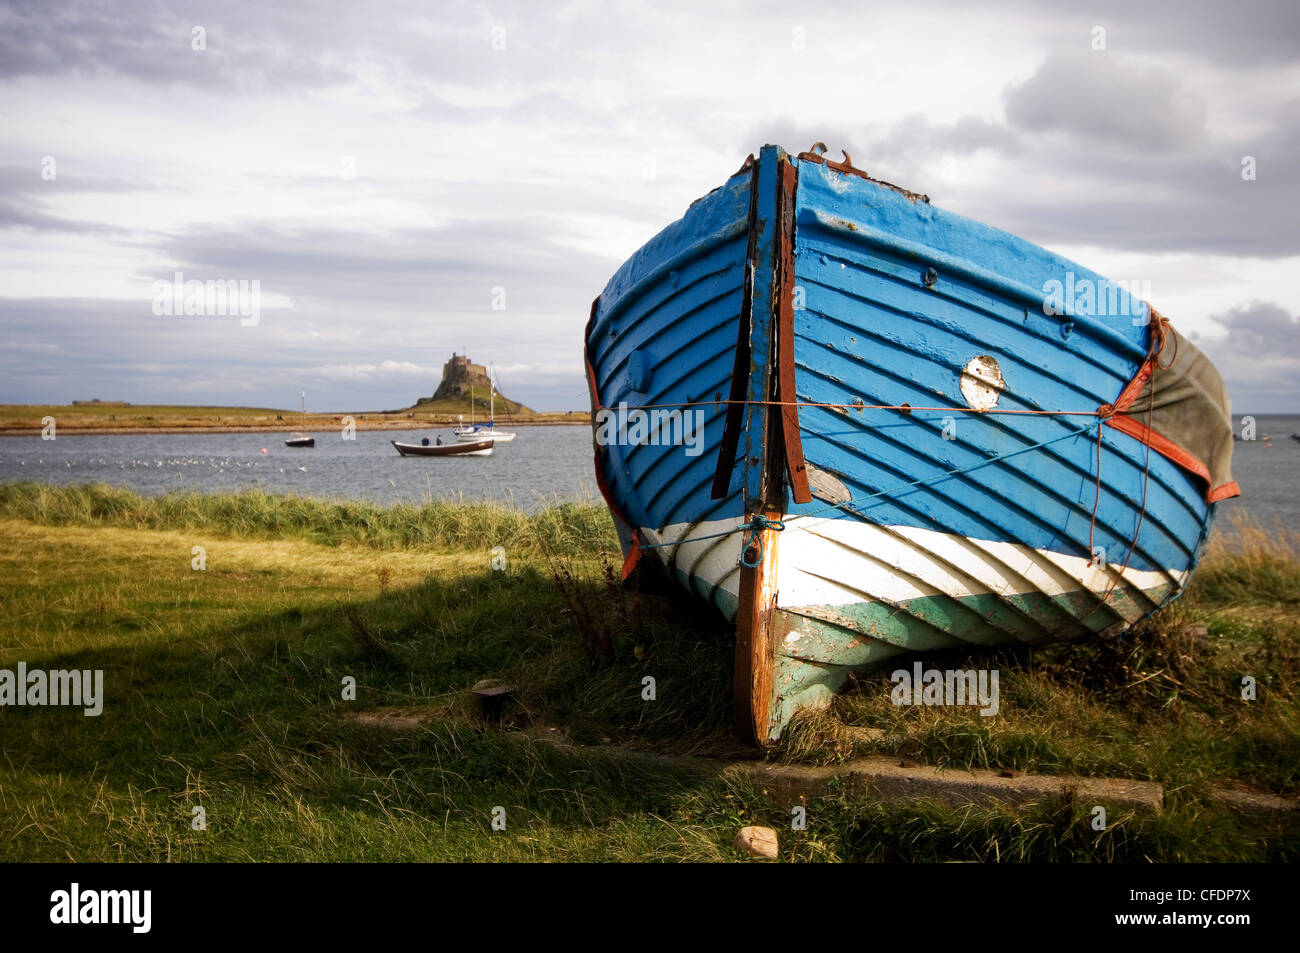 Barco Azul varado durante el invierno, con el castillo de Lindisfarne en el fondo Foto de stock